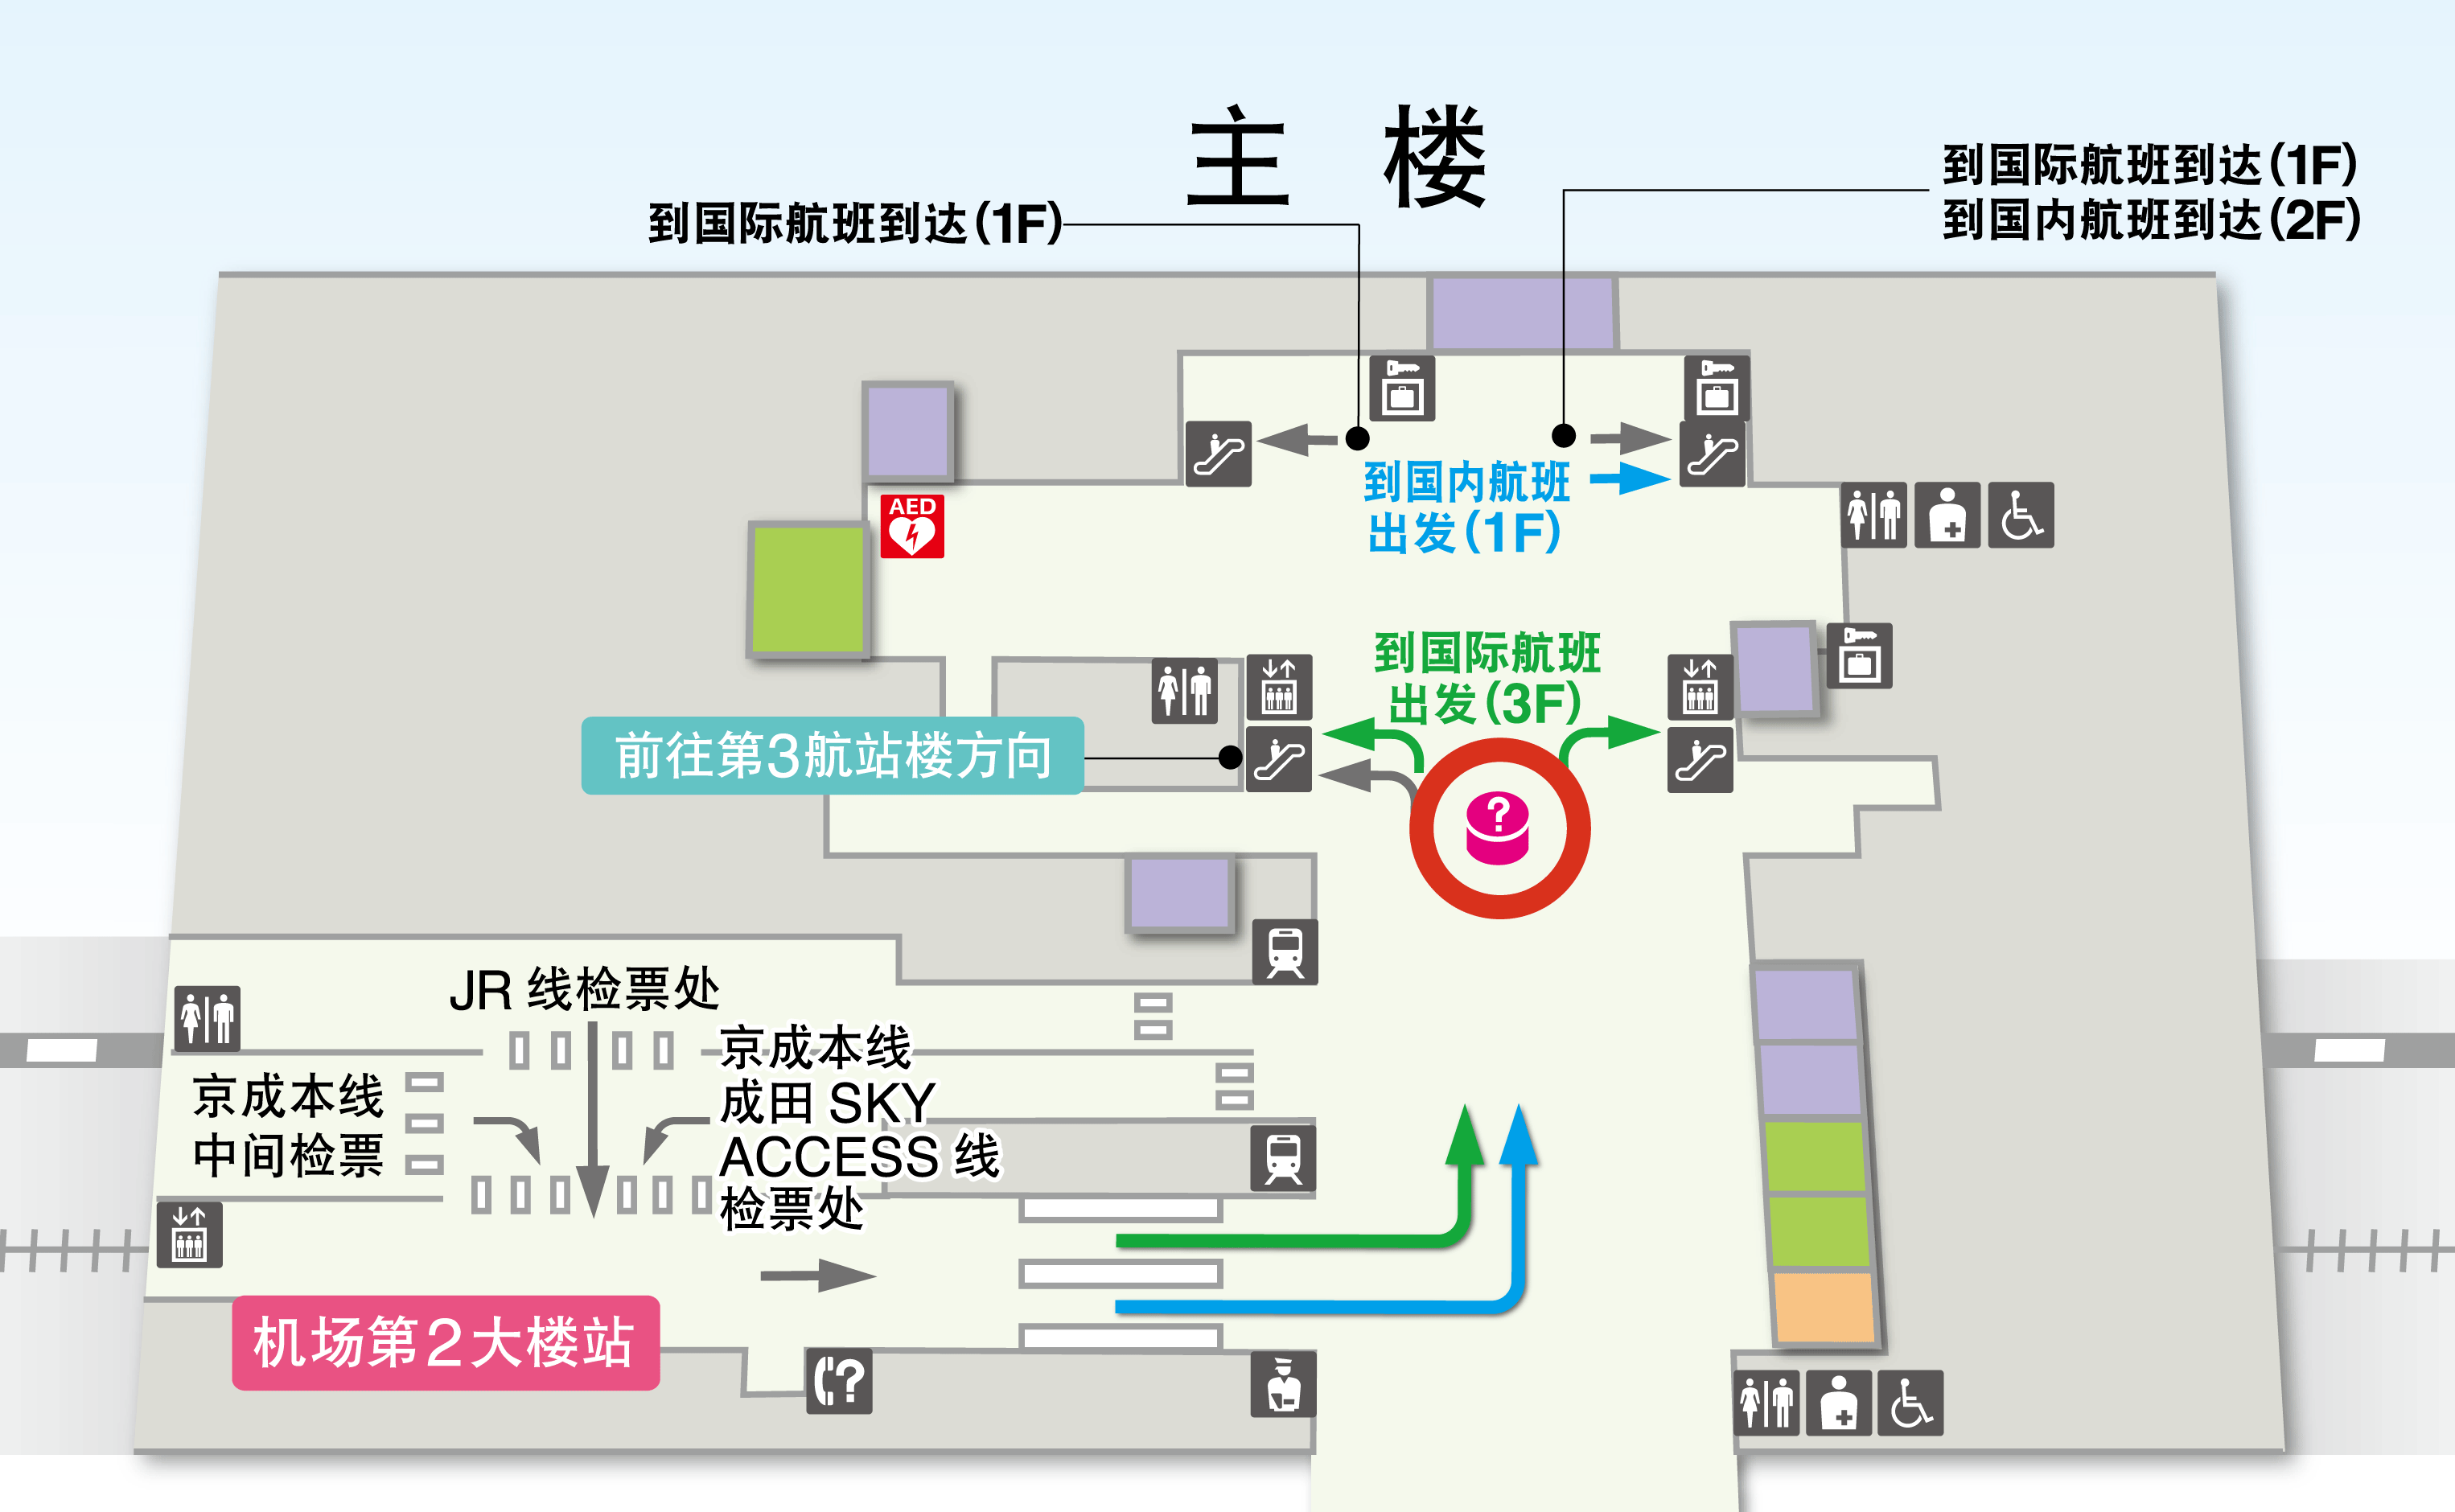 第2航站楼 地下1楼 铁路车站  楼层地图图示